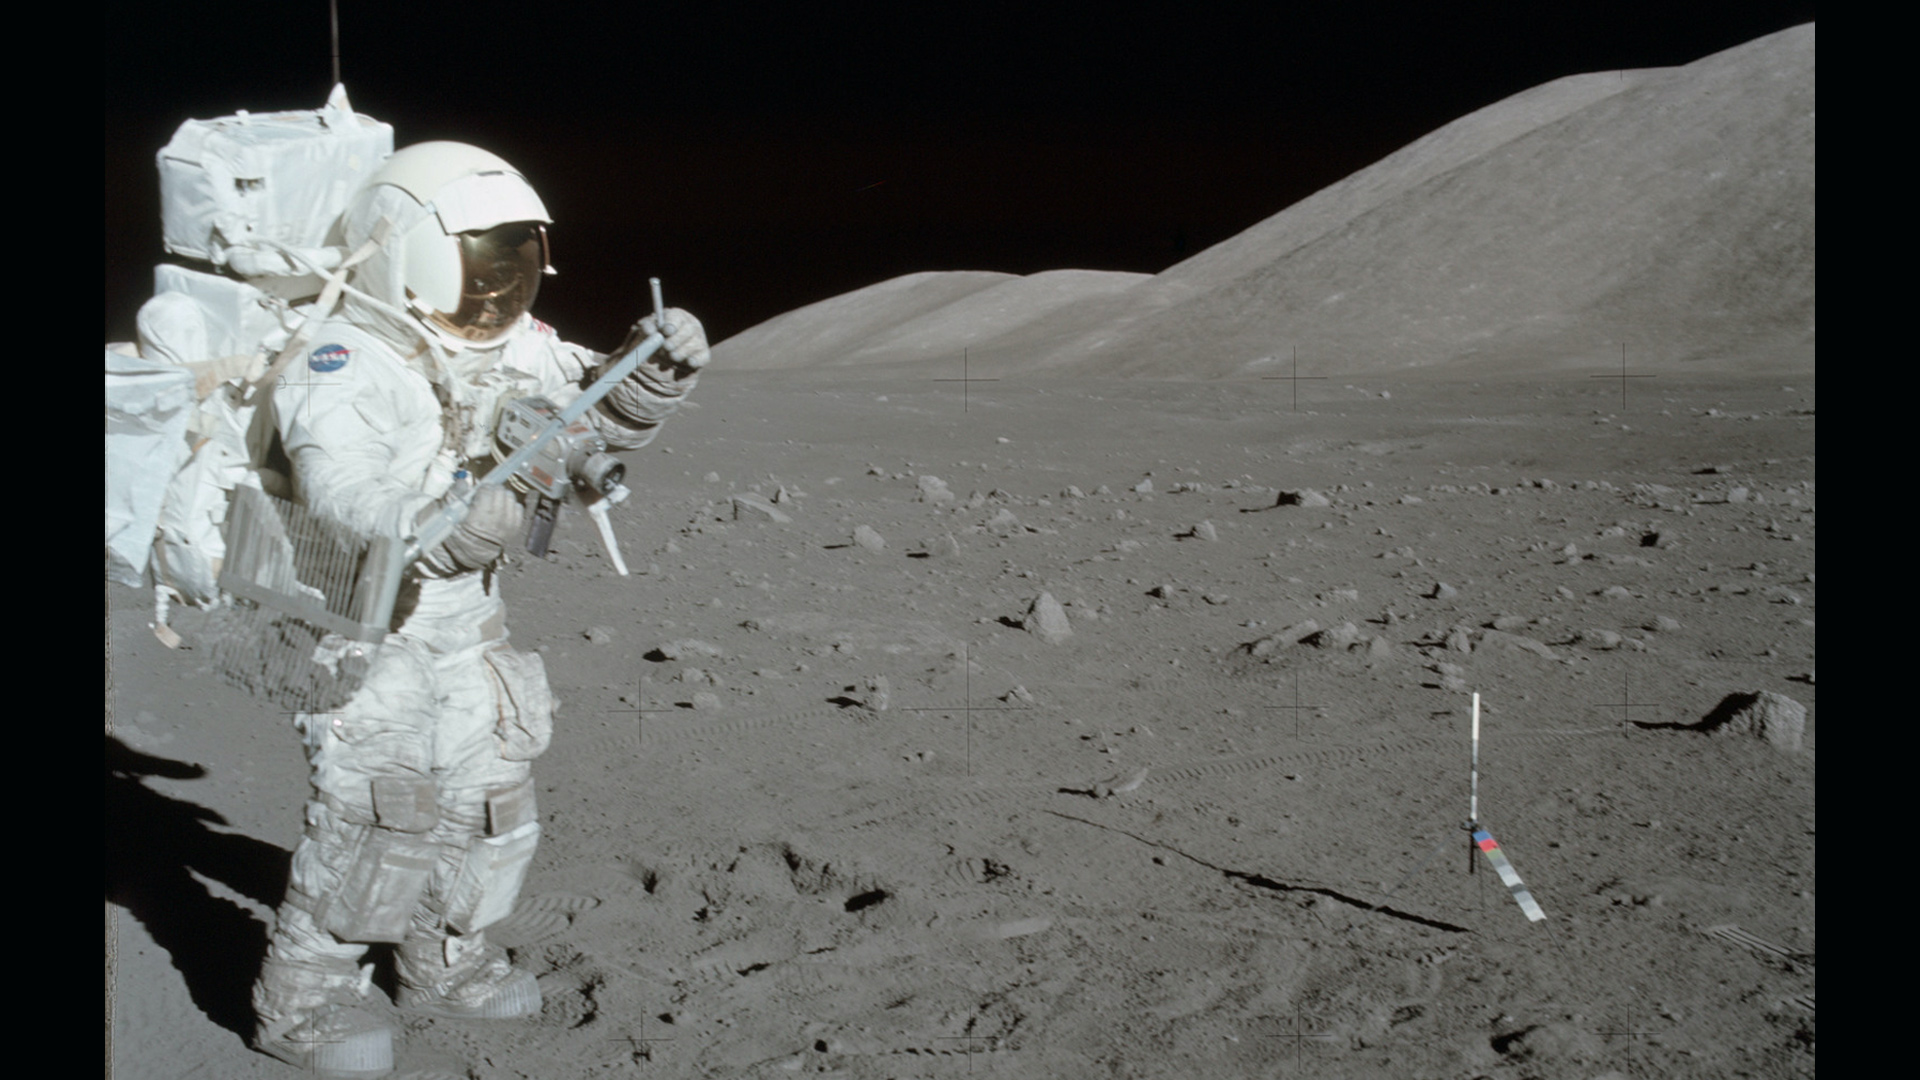 Apollo 17 astronaut on moon, 1972